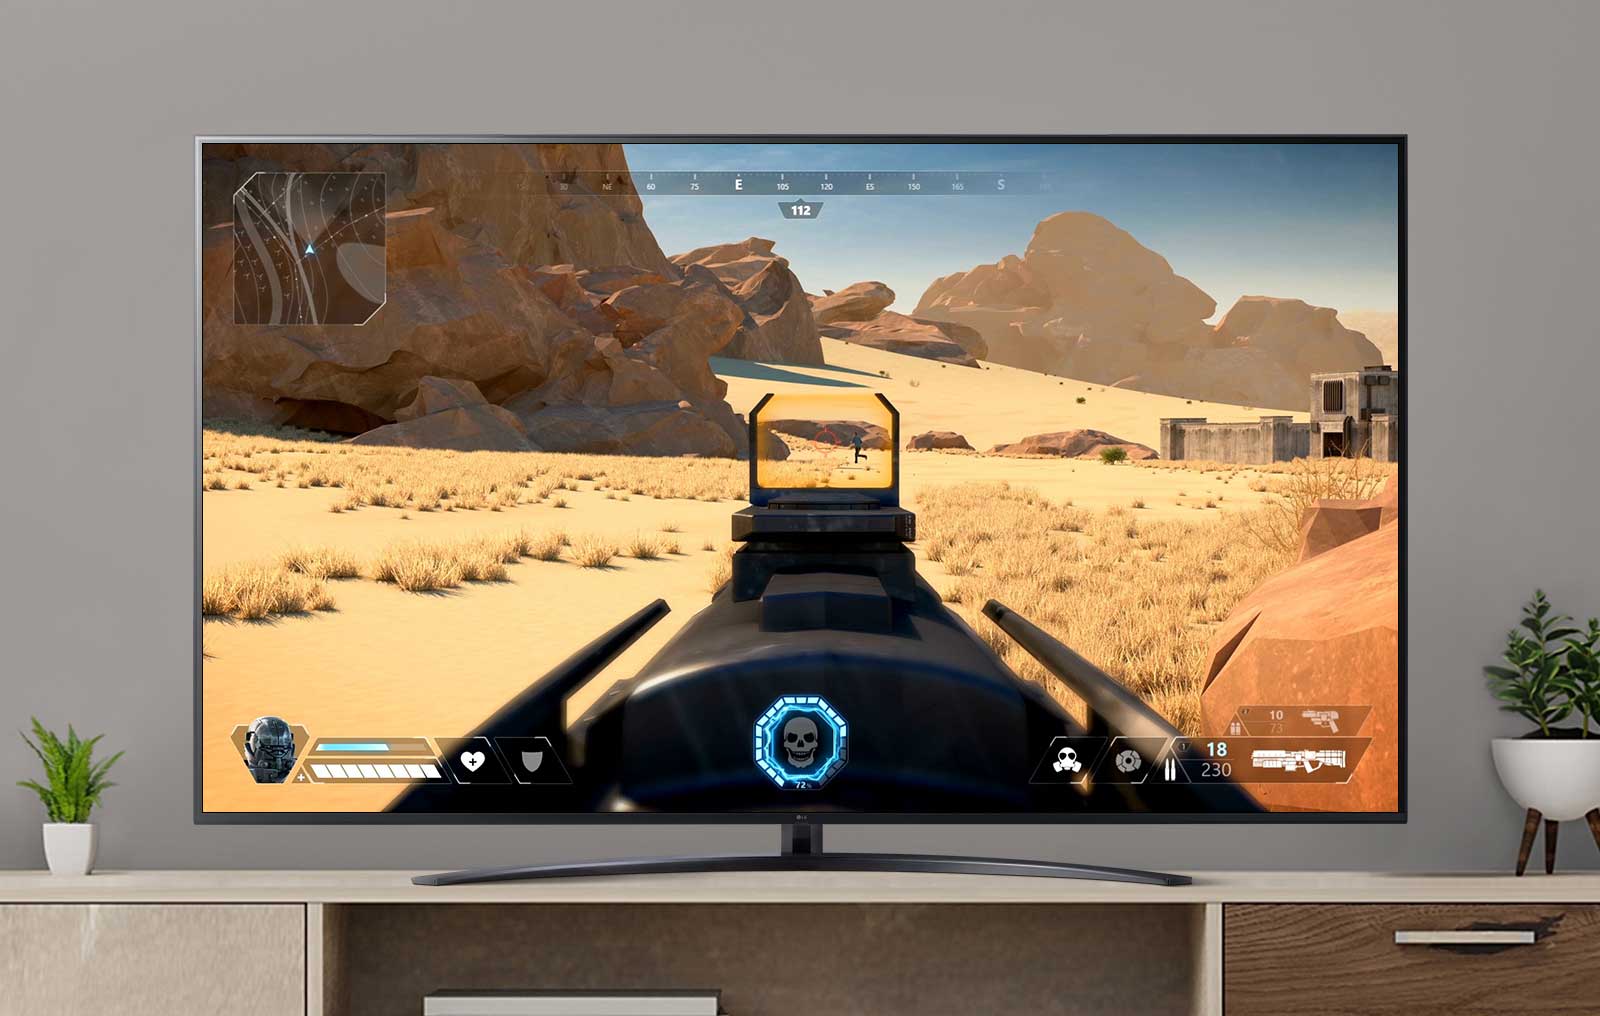 Экран телевизора с шутером от первого лица с игроком, стреляющим во врага. (просмотр видео)